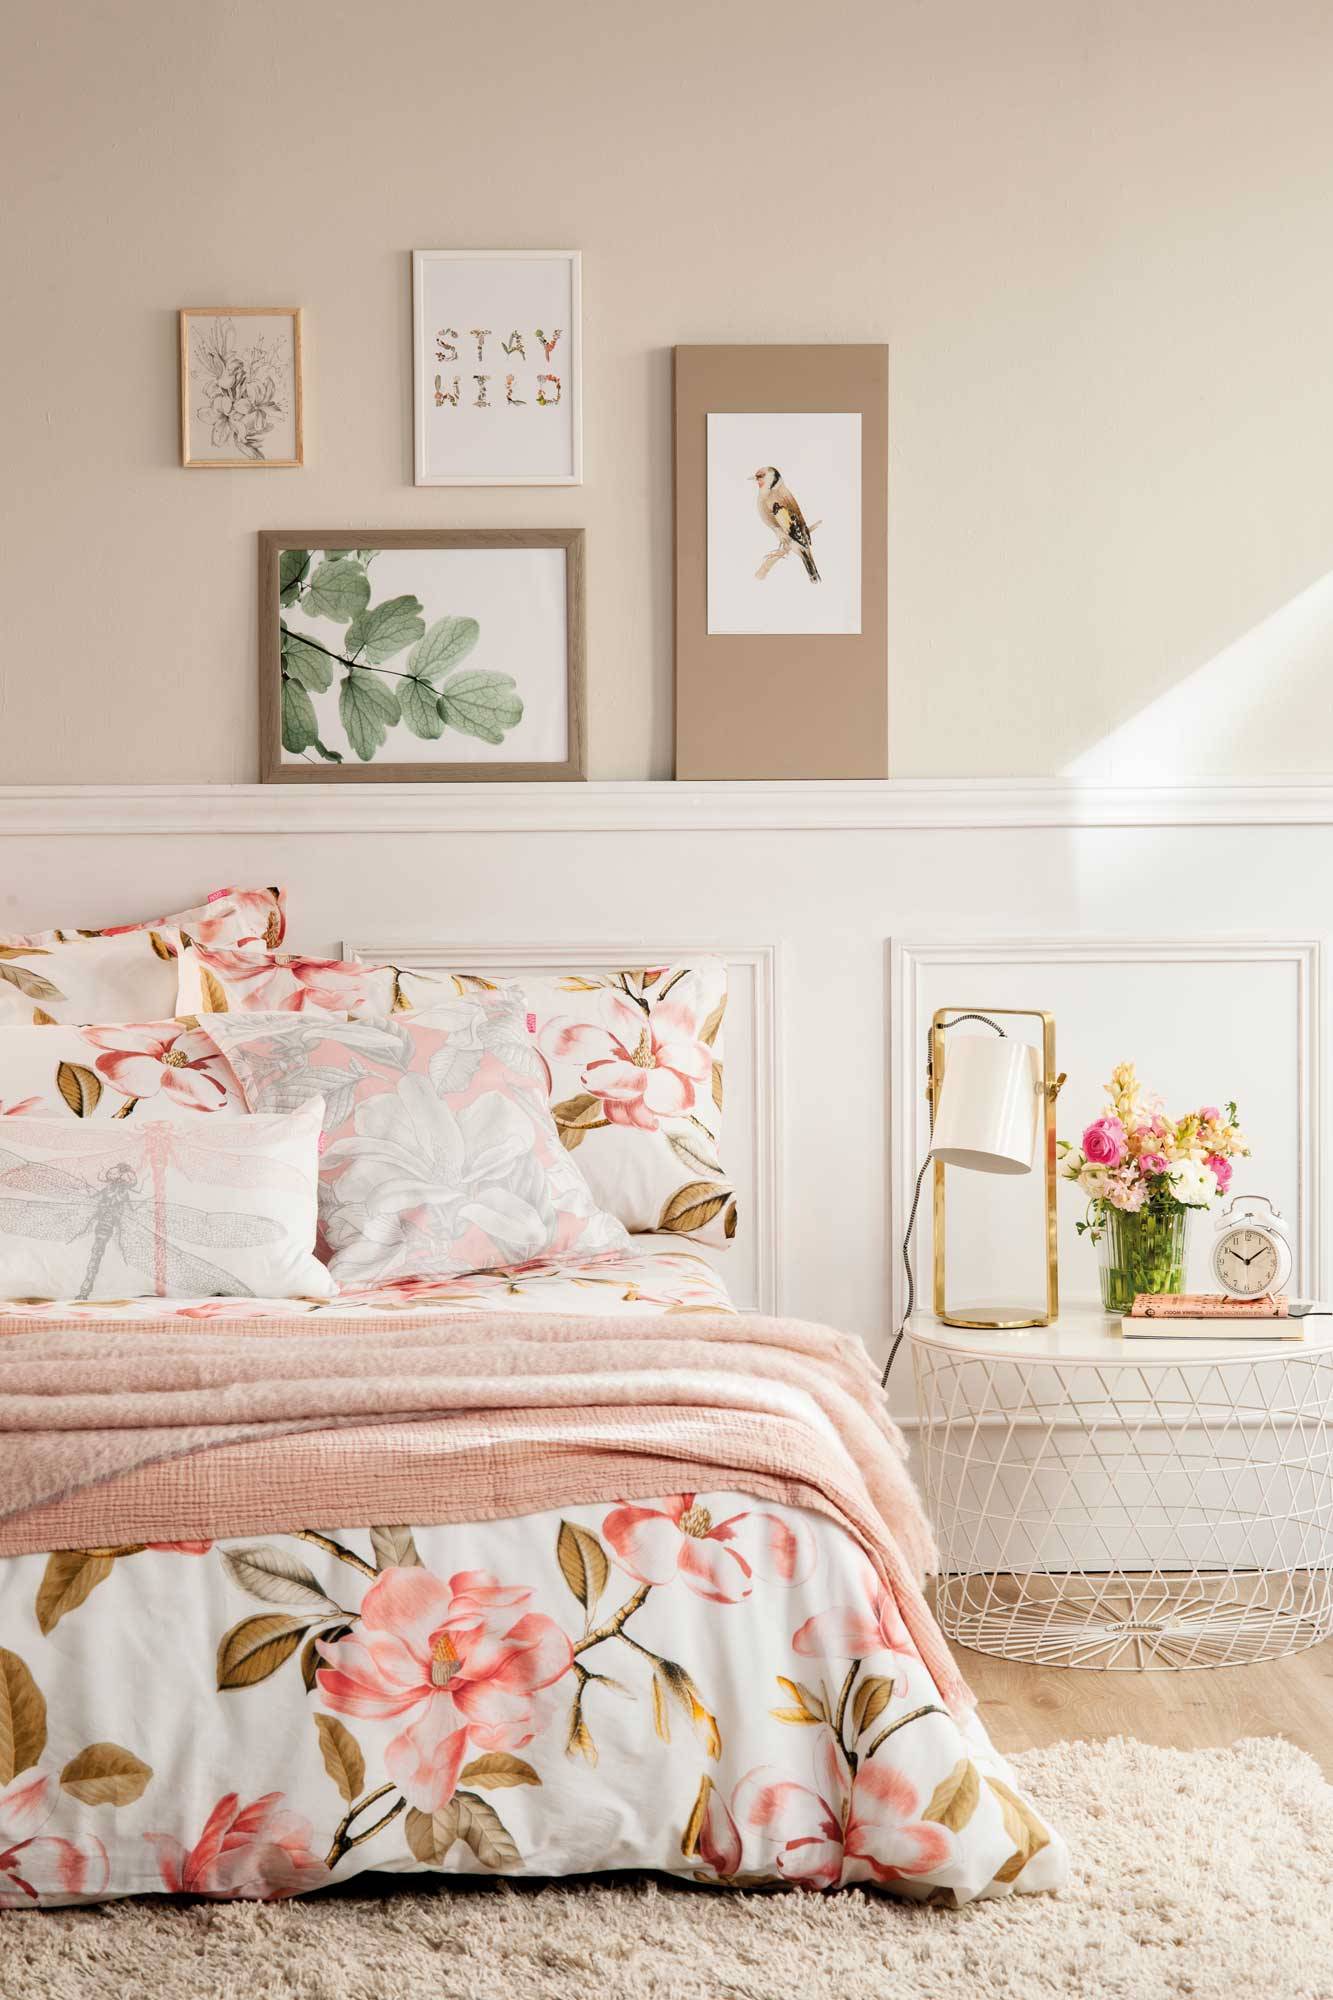 Dormitorio de estilo romántico con ropa de cama floral en tonos rosas y neutros 00508333